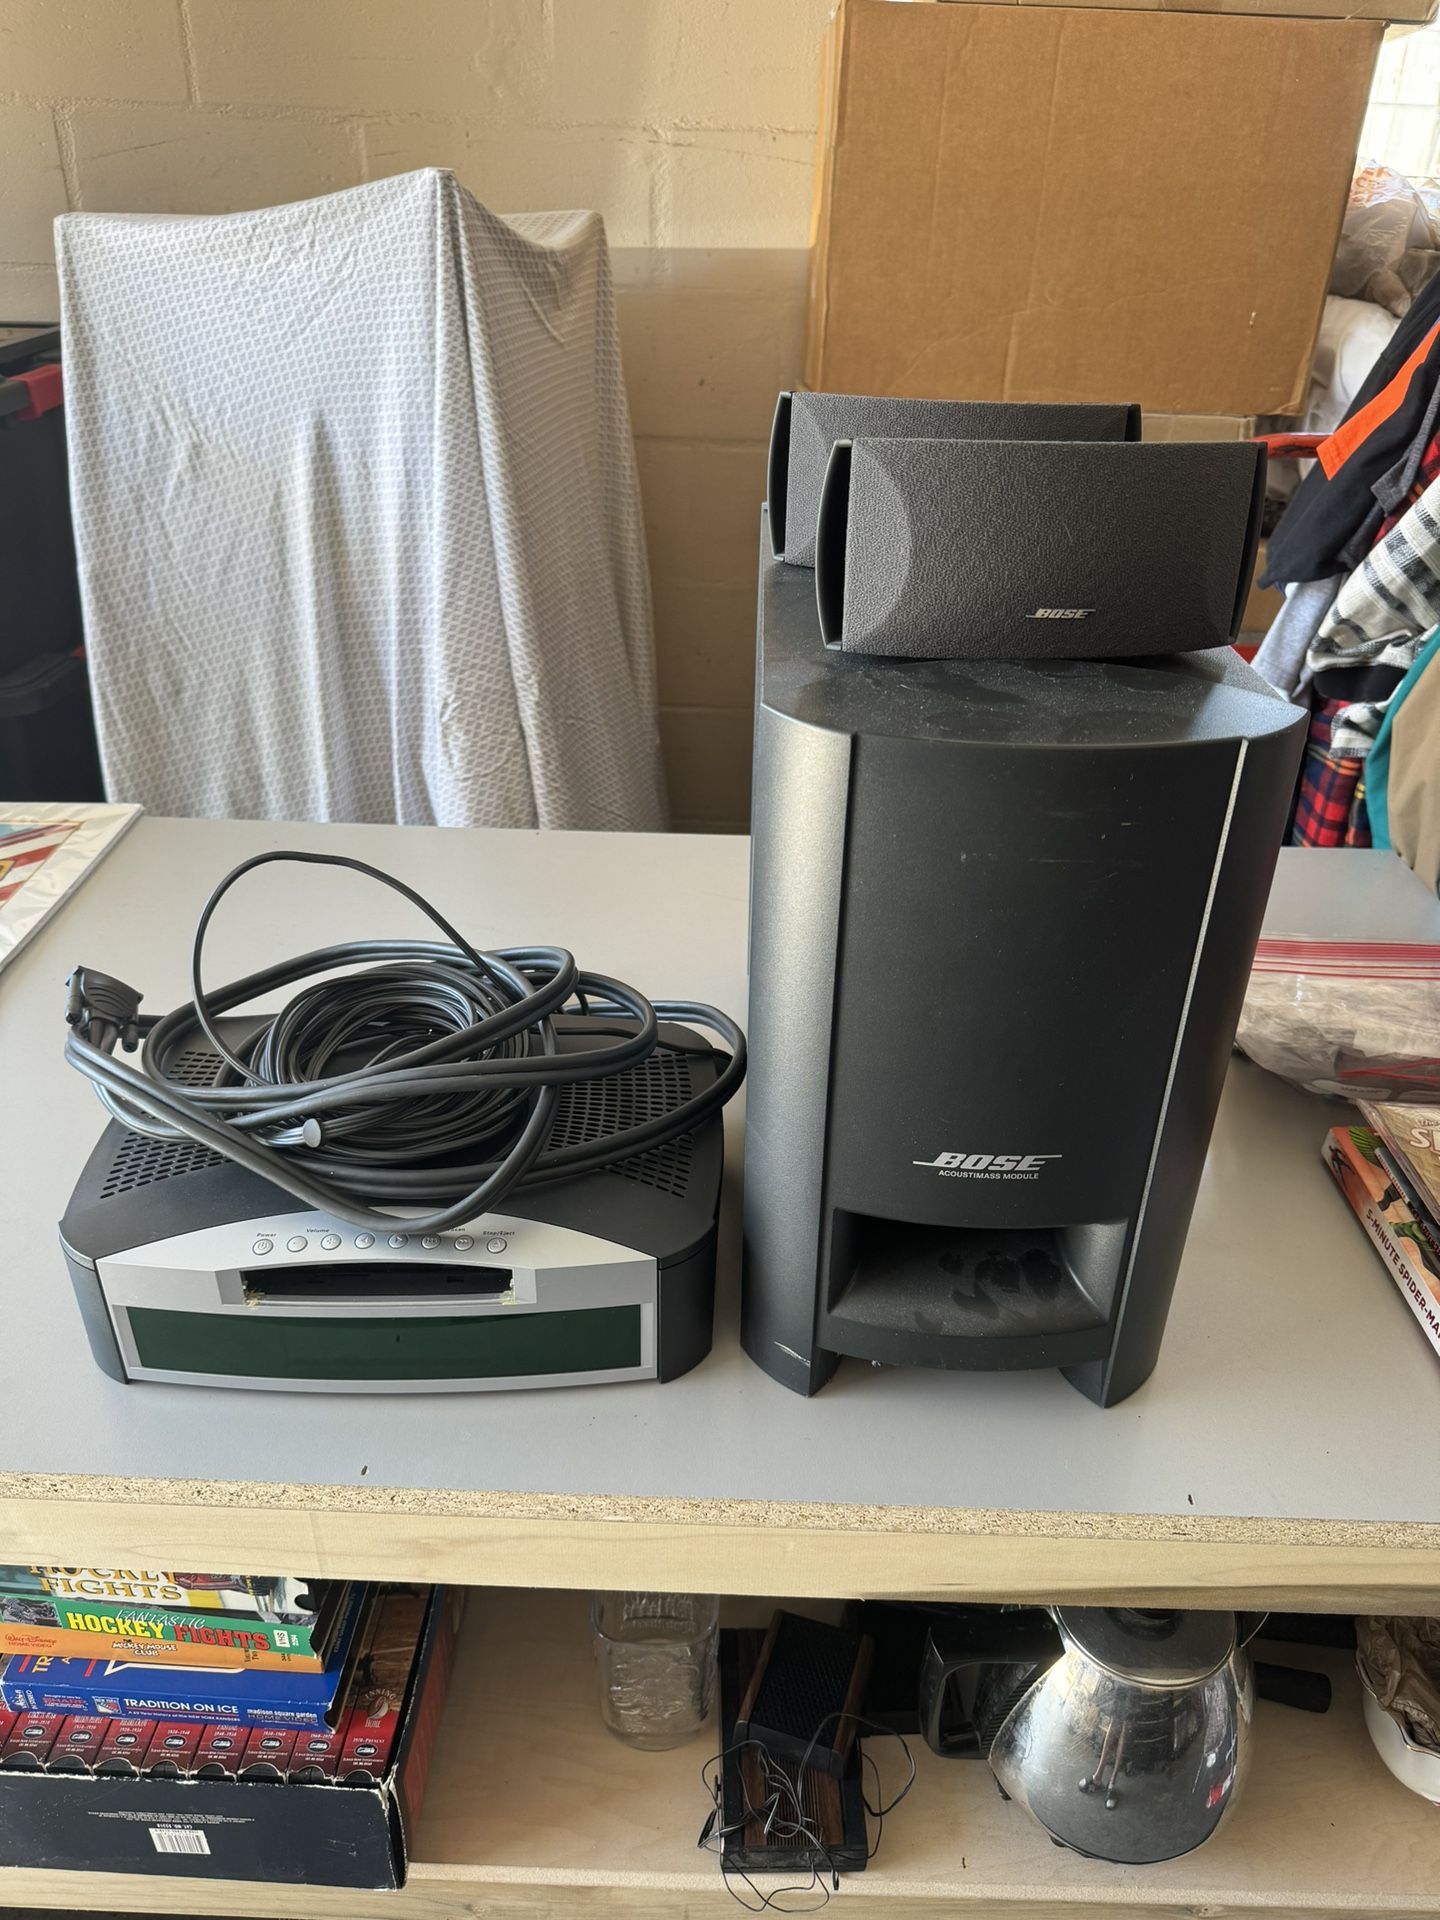 BOSE PS3-2-1 II Powered Speaker System AV3-2-1 III Media Center